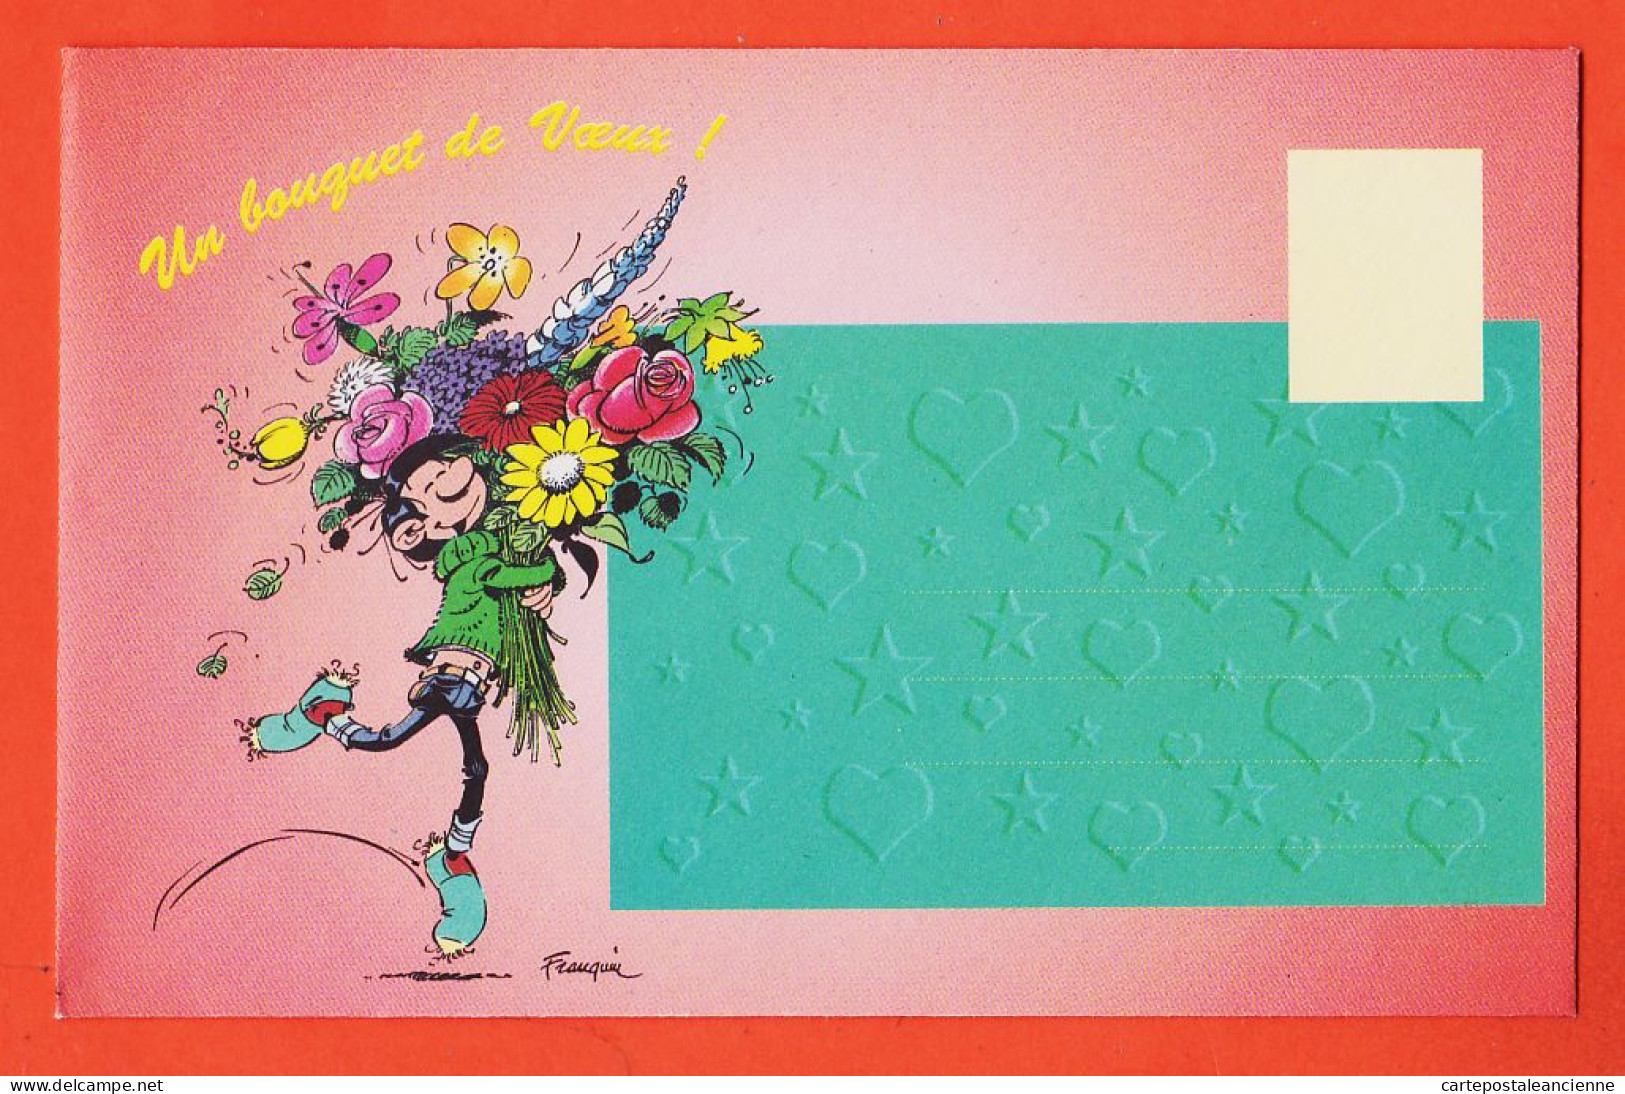 31423 / Rare Enveloppe 15x10 FRANQUIN Un Bouquet De Voeux De Gaston LAGAFFE 1980s Editions DALIX - Advertising